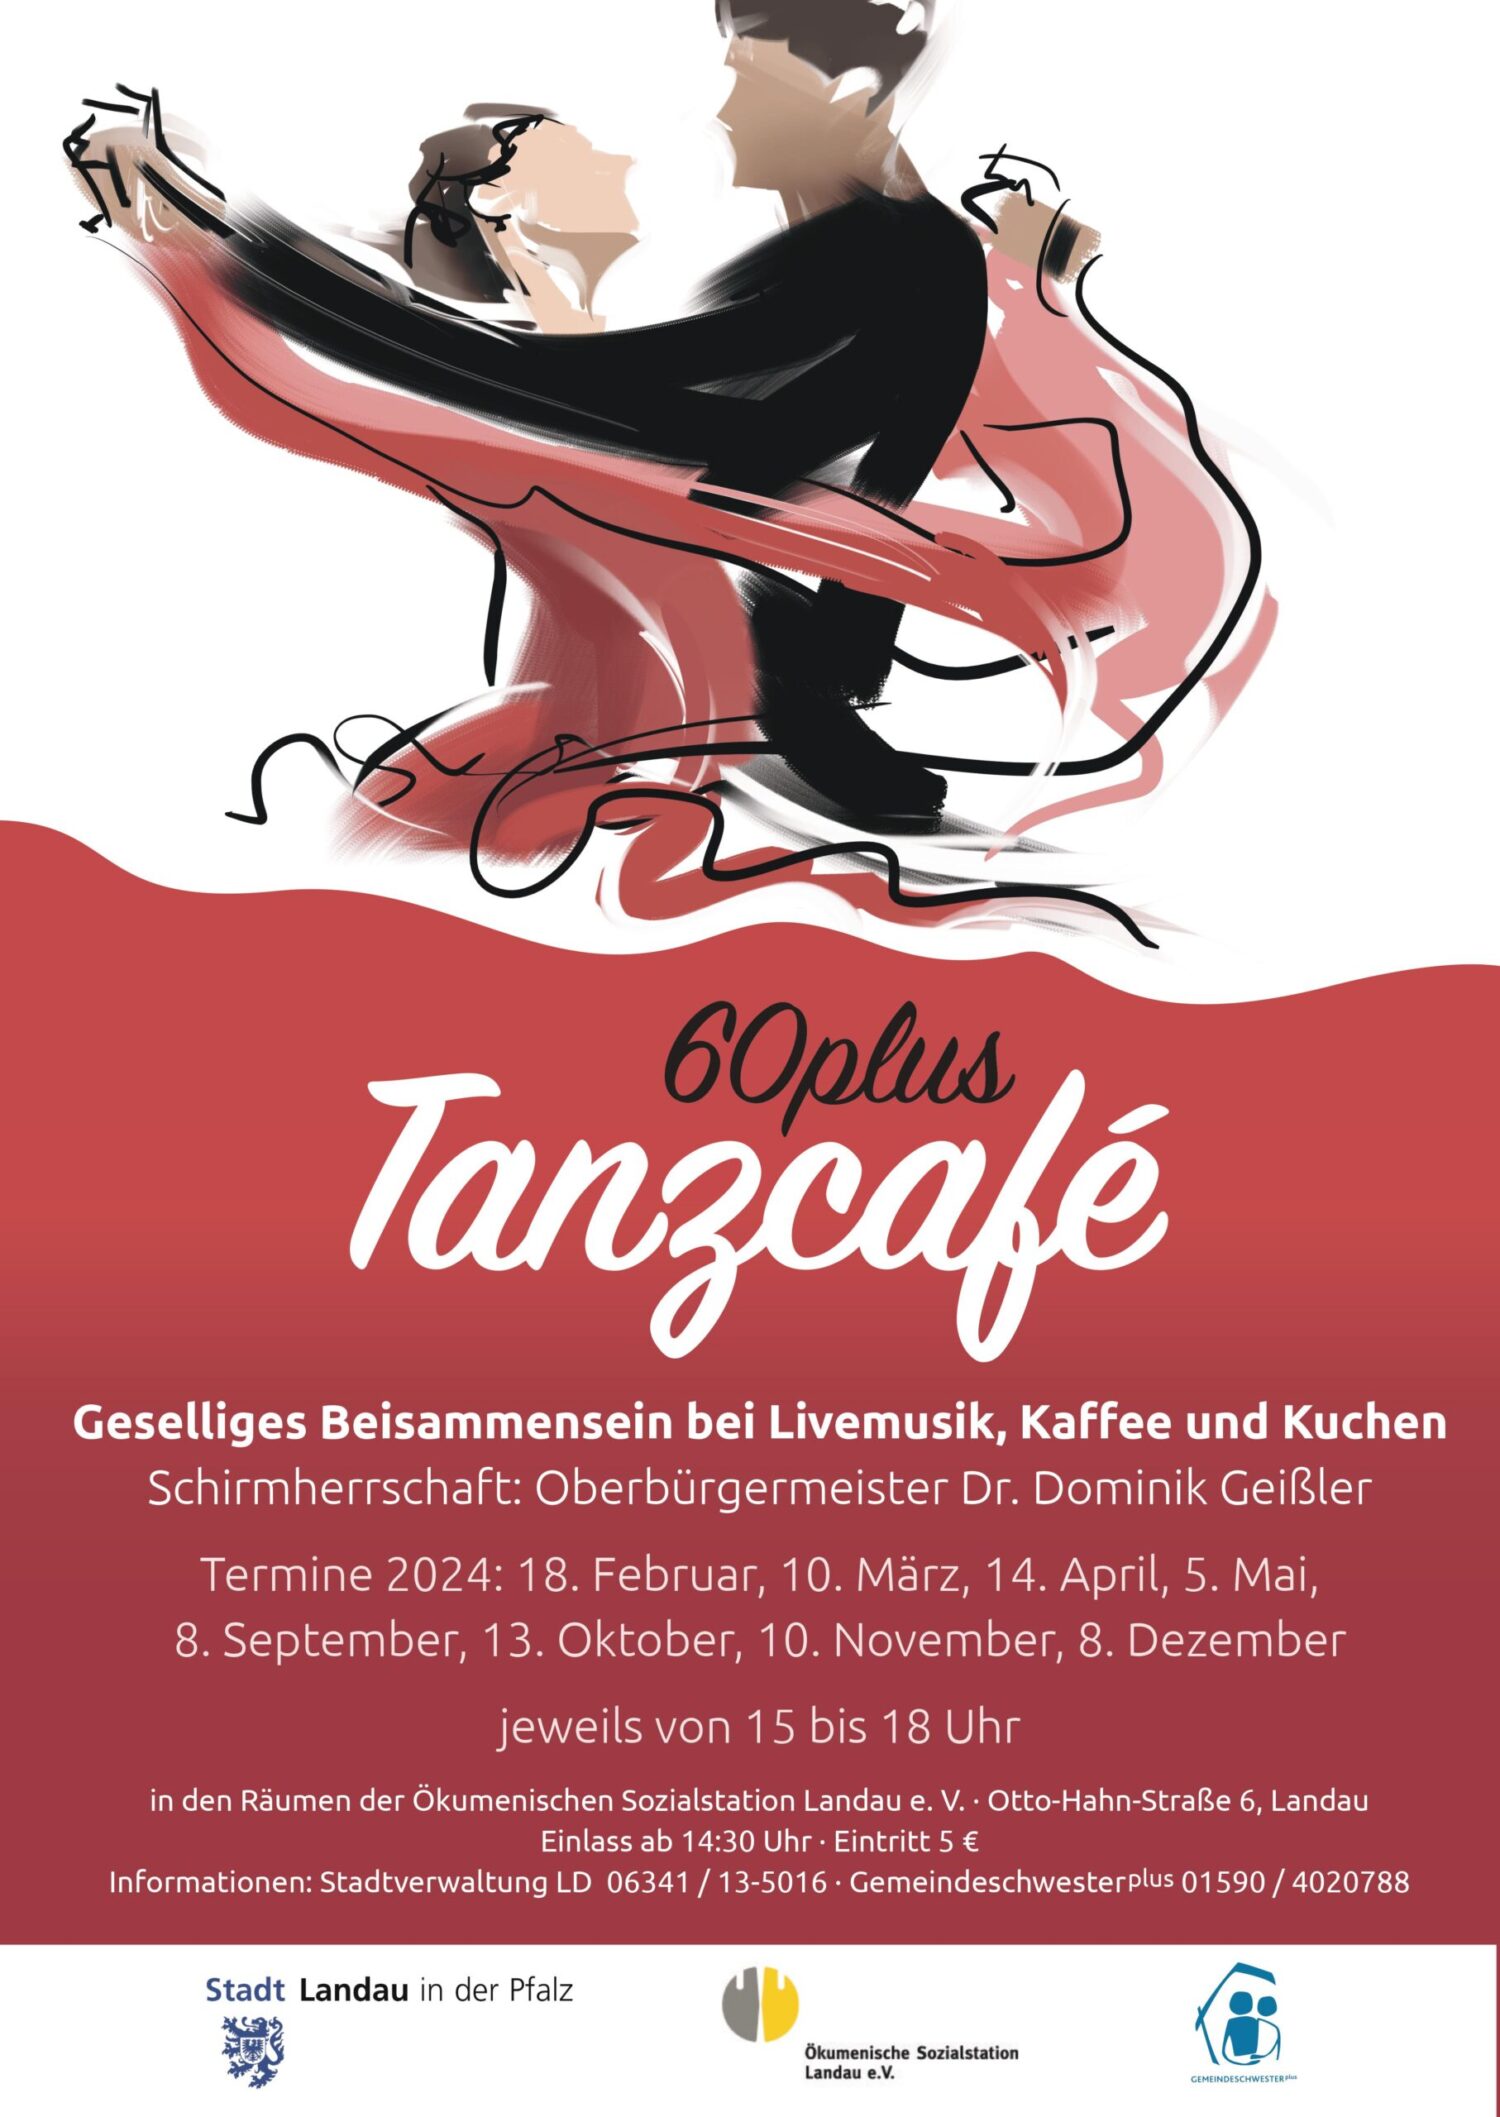 Tanzcafé 60plus: Am Sonntag, 10. Dezember, wird wieder das Tanzbein geschwungen